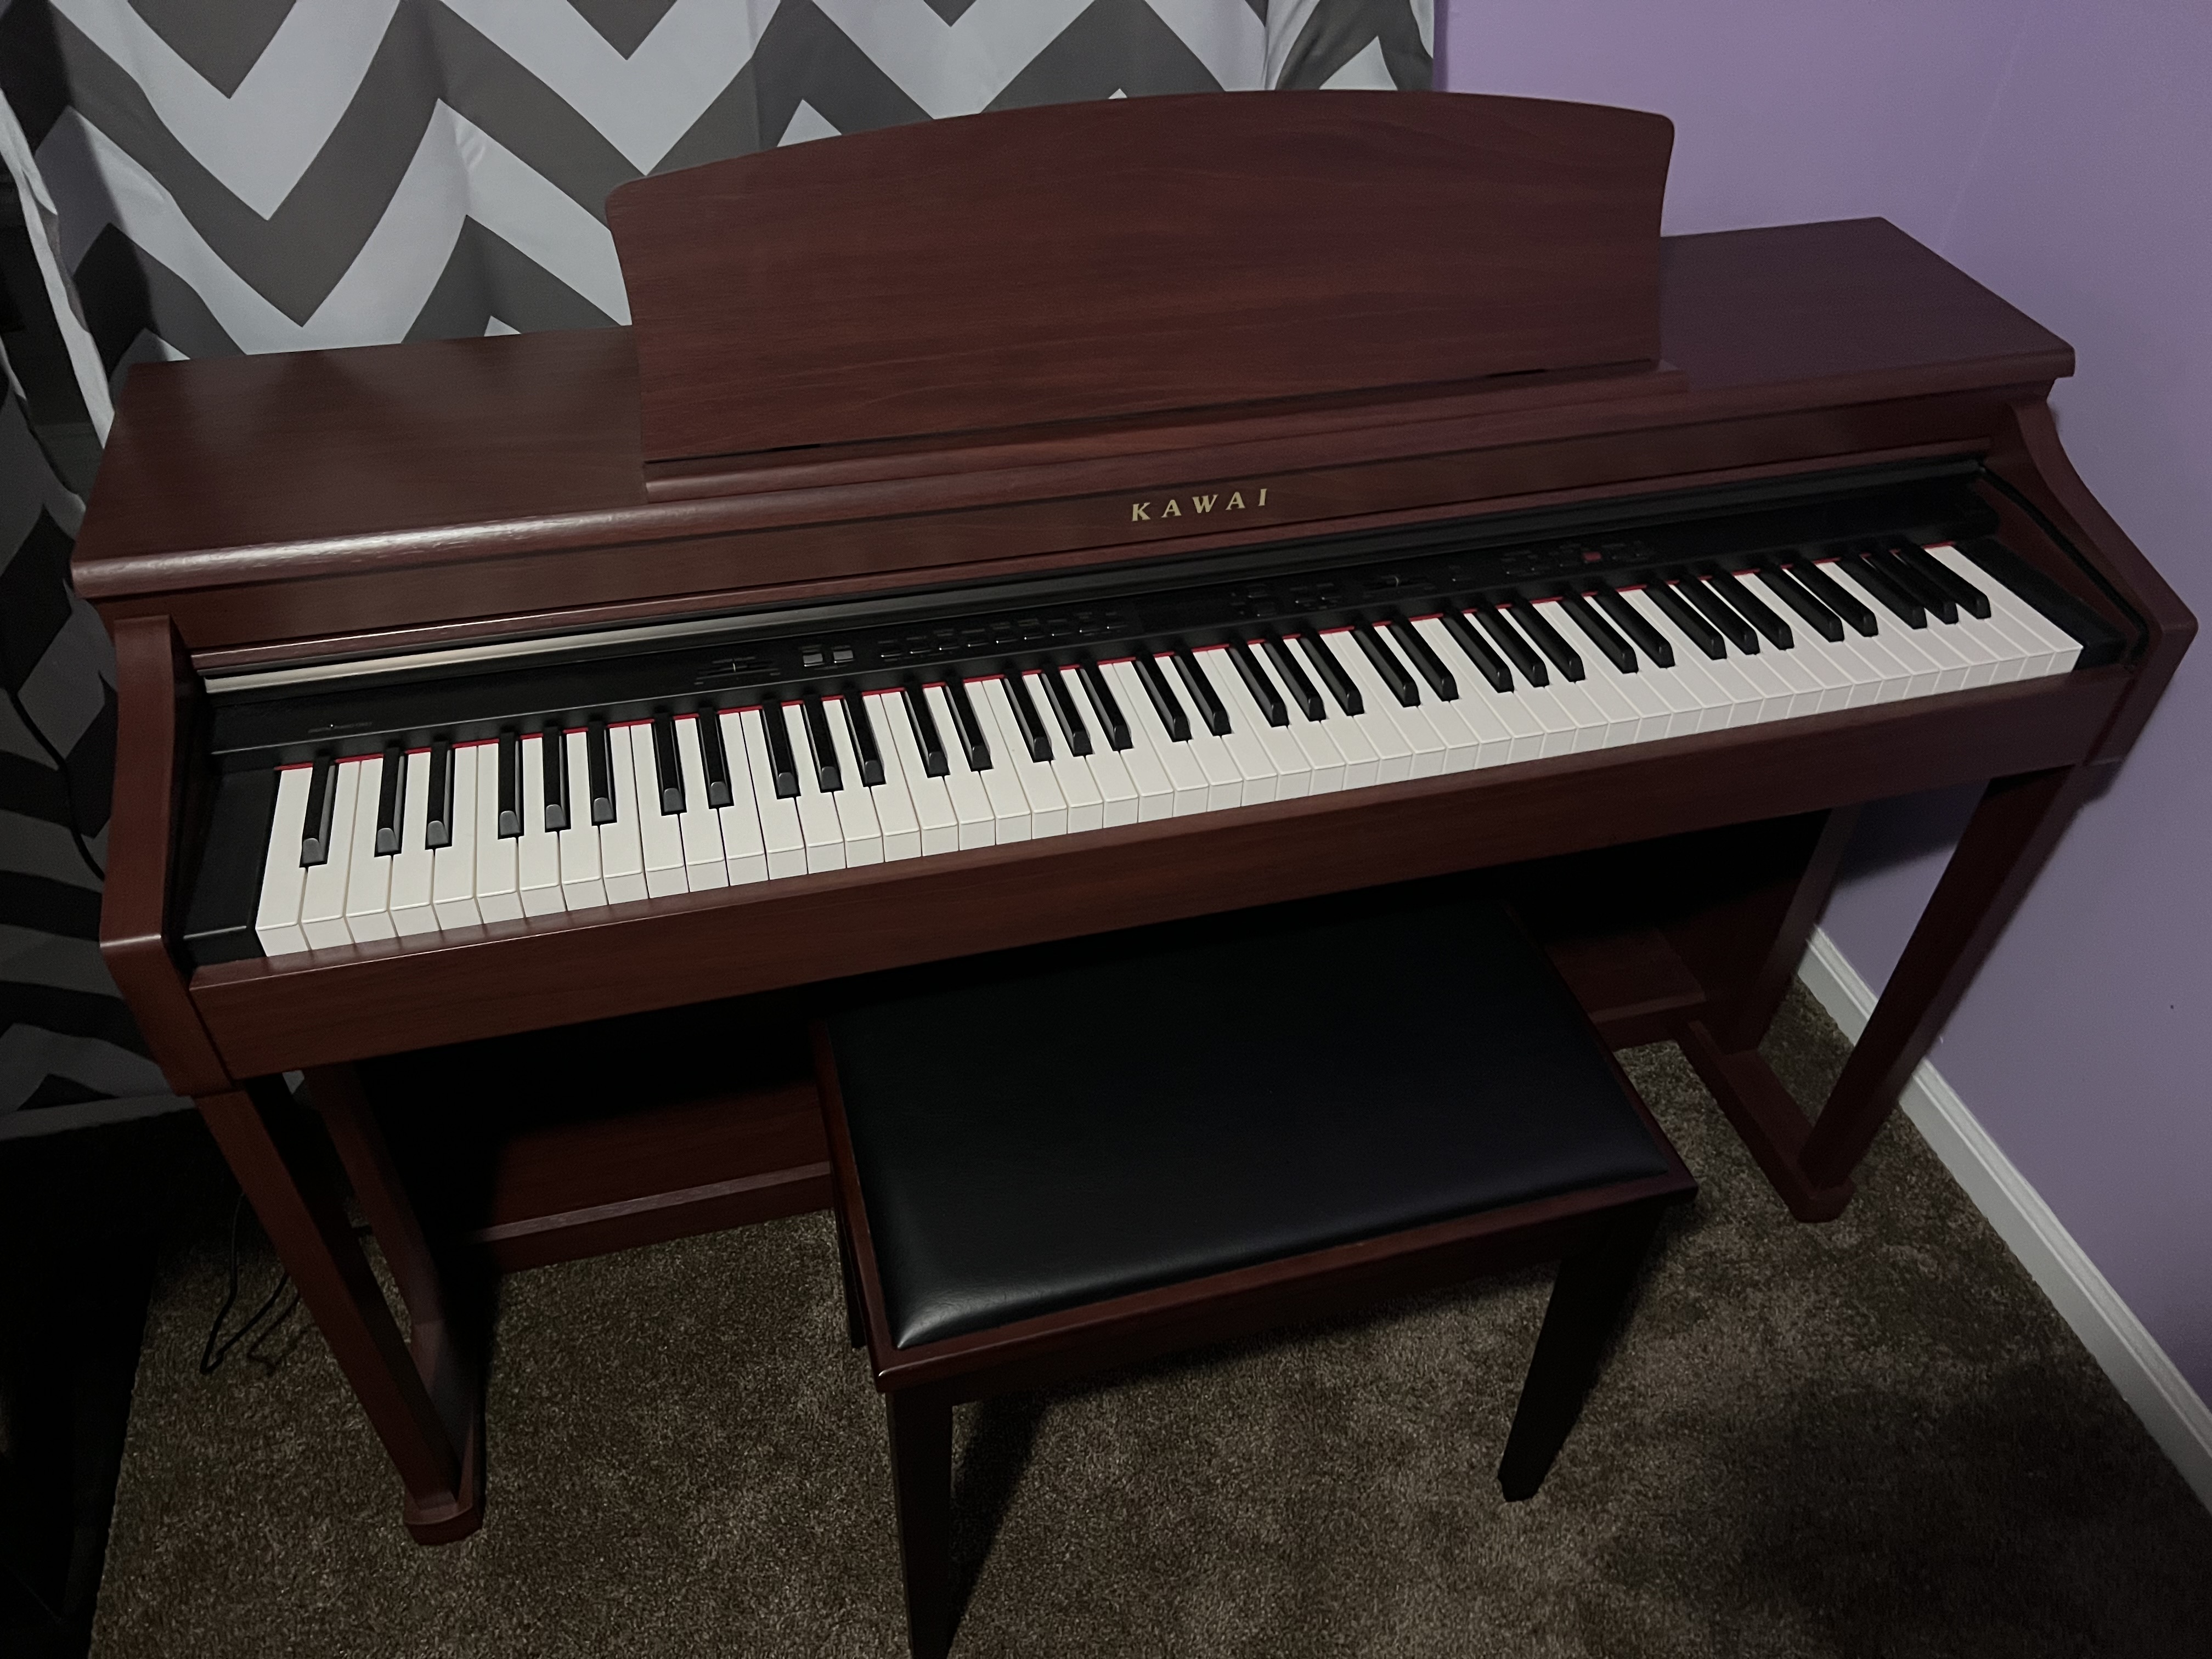 Kawai CN33 digital piano